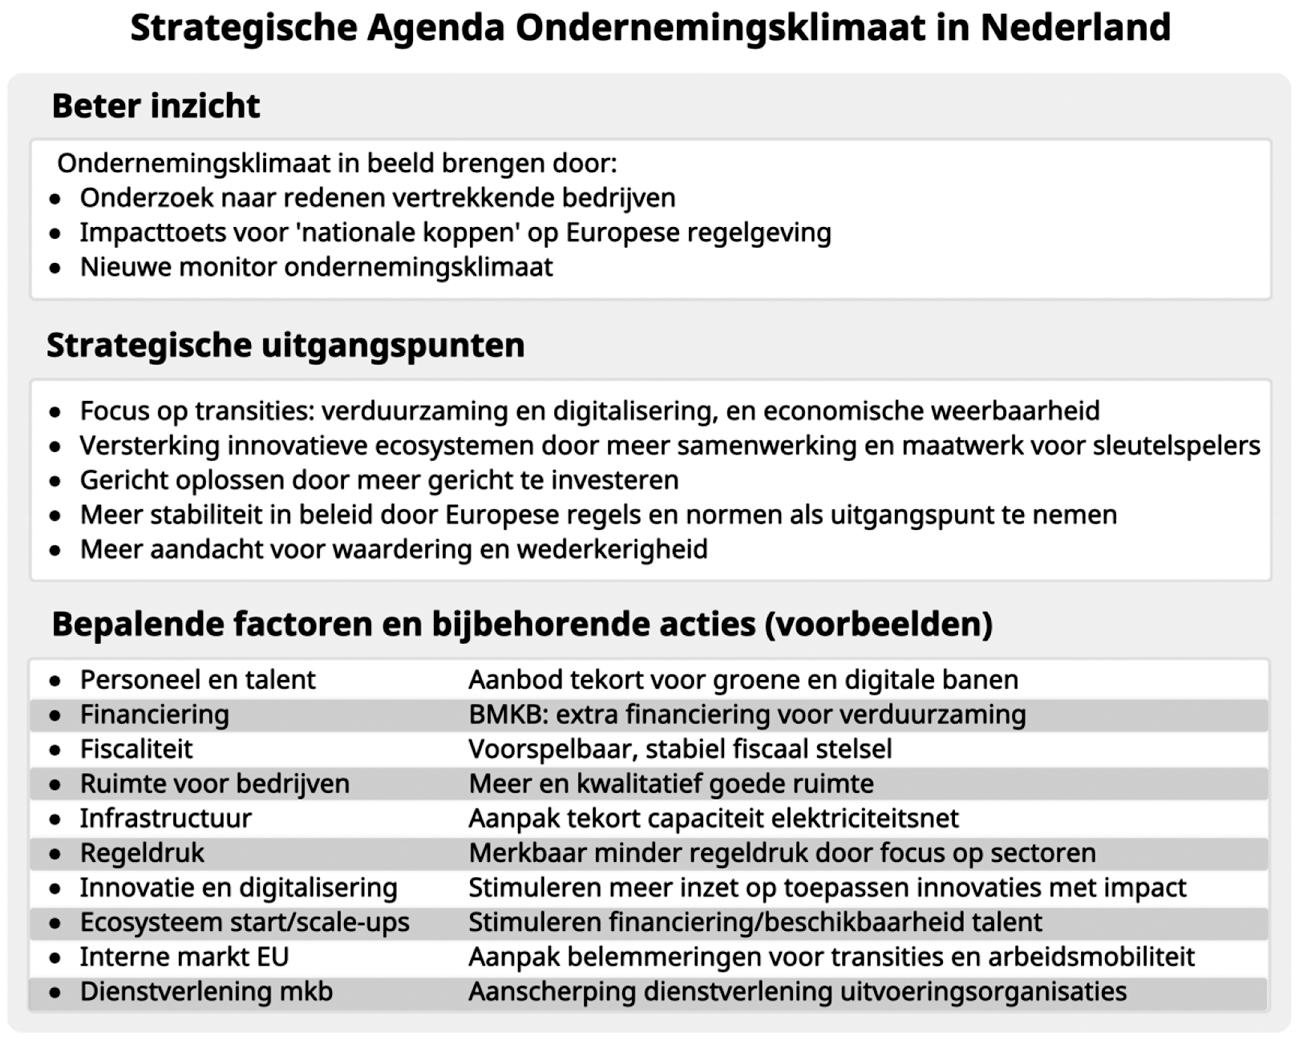 Figuur 1. Strategische Agenda Ondernemingsklimaat in Nederland